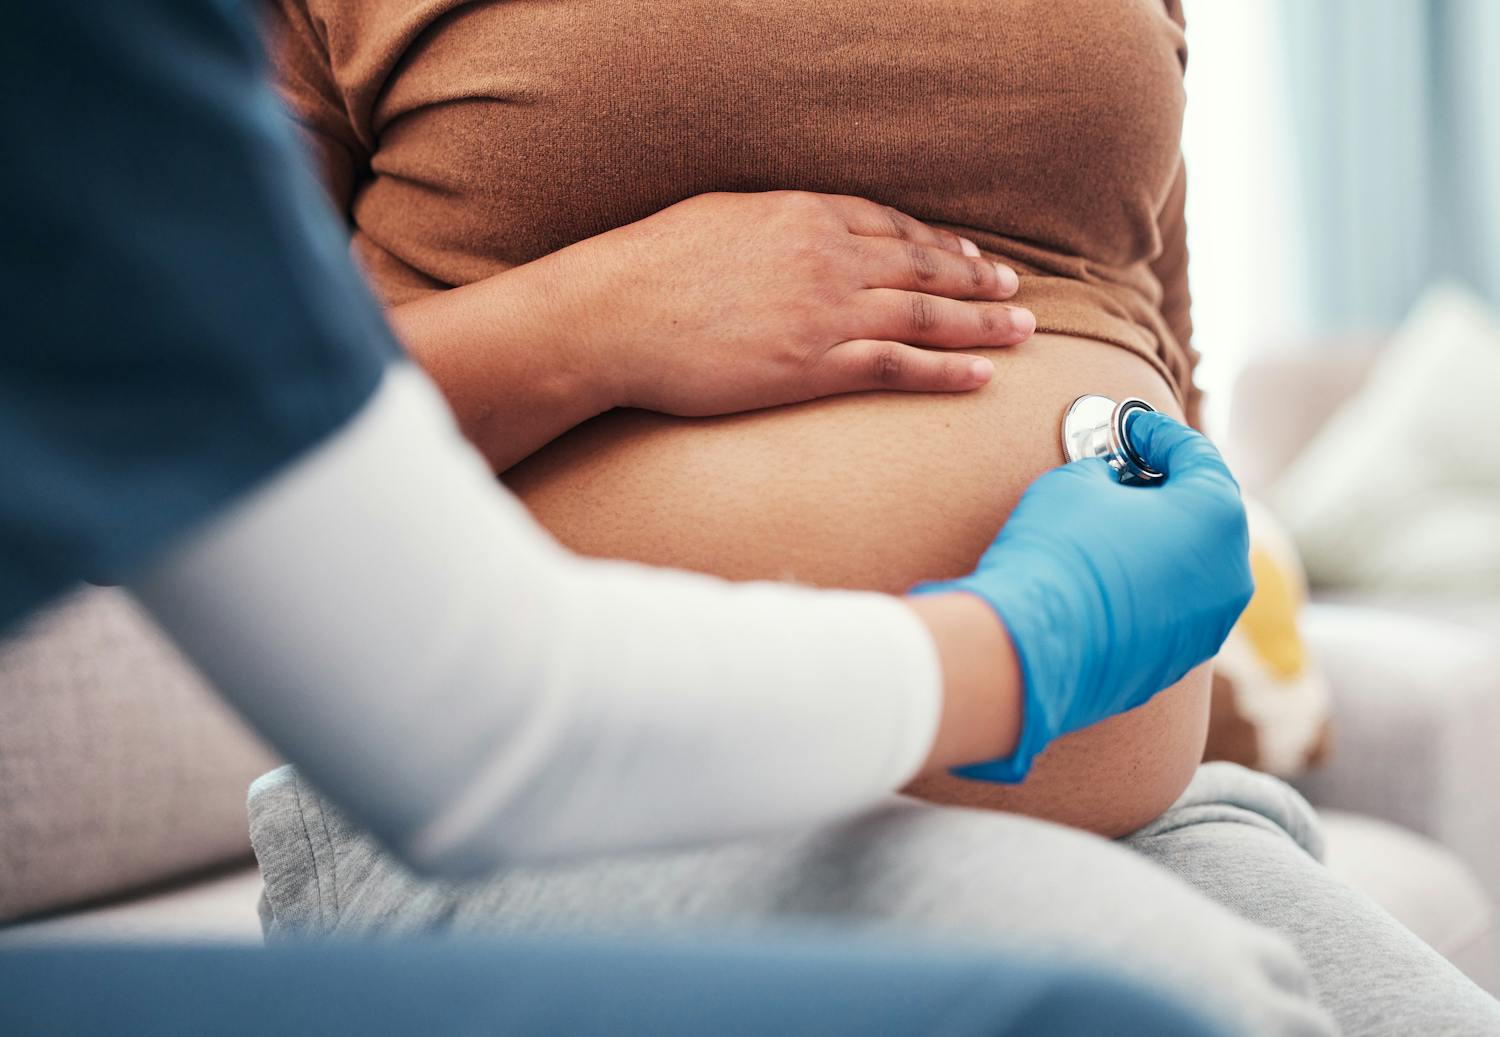 Risques de la rubéole pendant la grossesse et prévention pour le bébé.jpeg